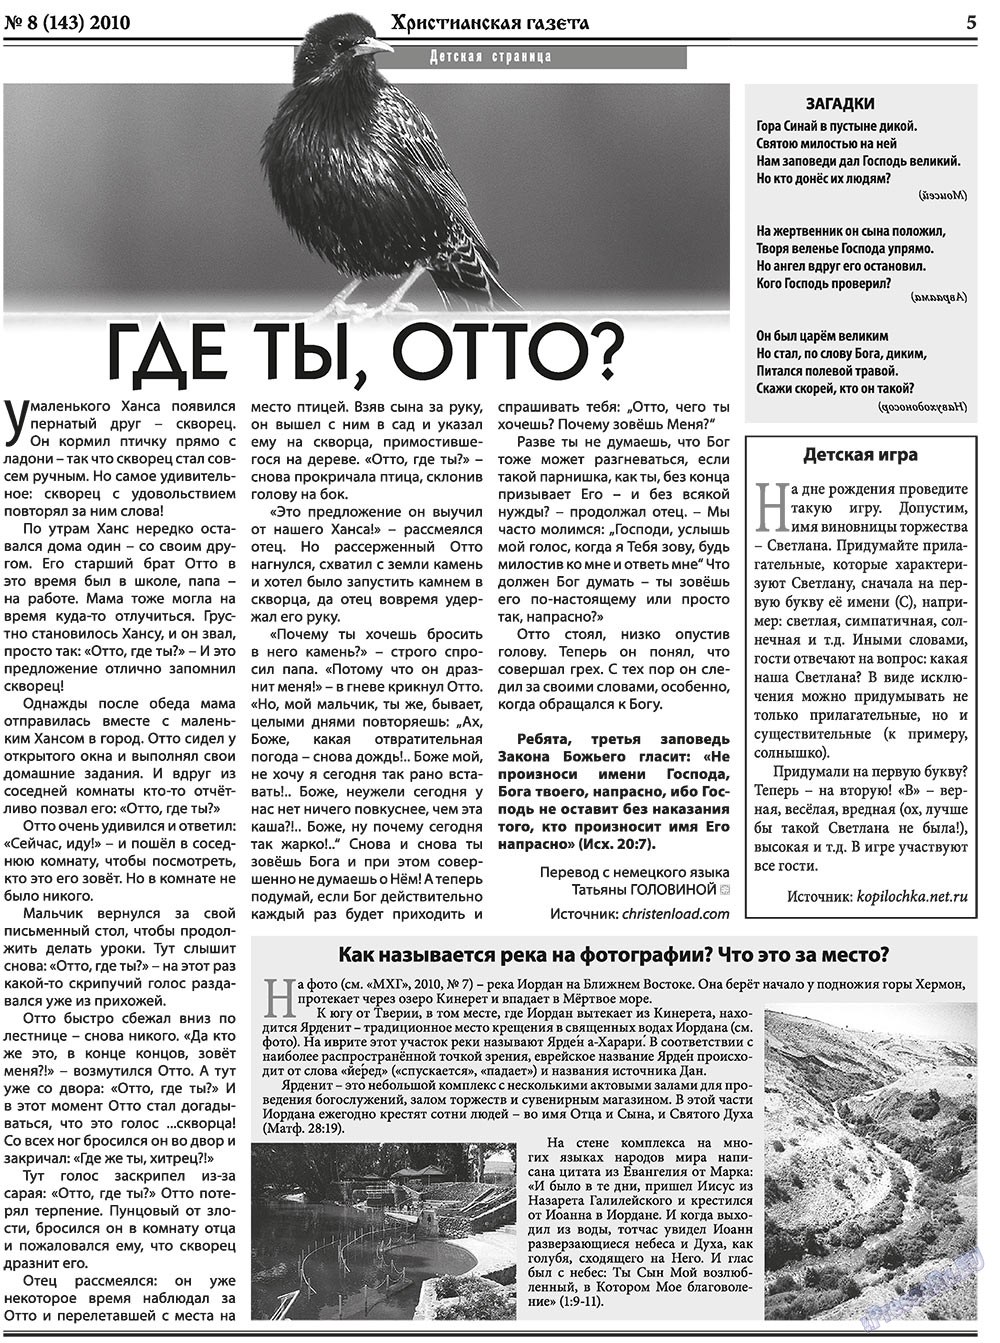 Христианская газета, газета. 2010 №8 стр.5